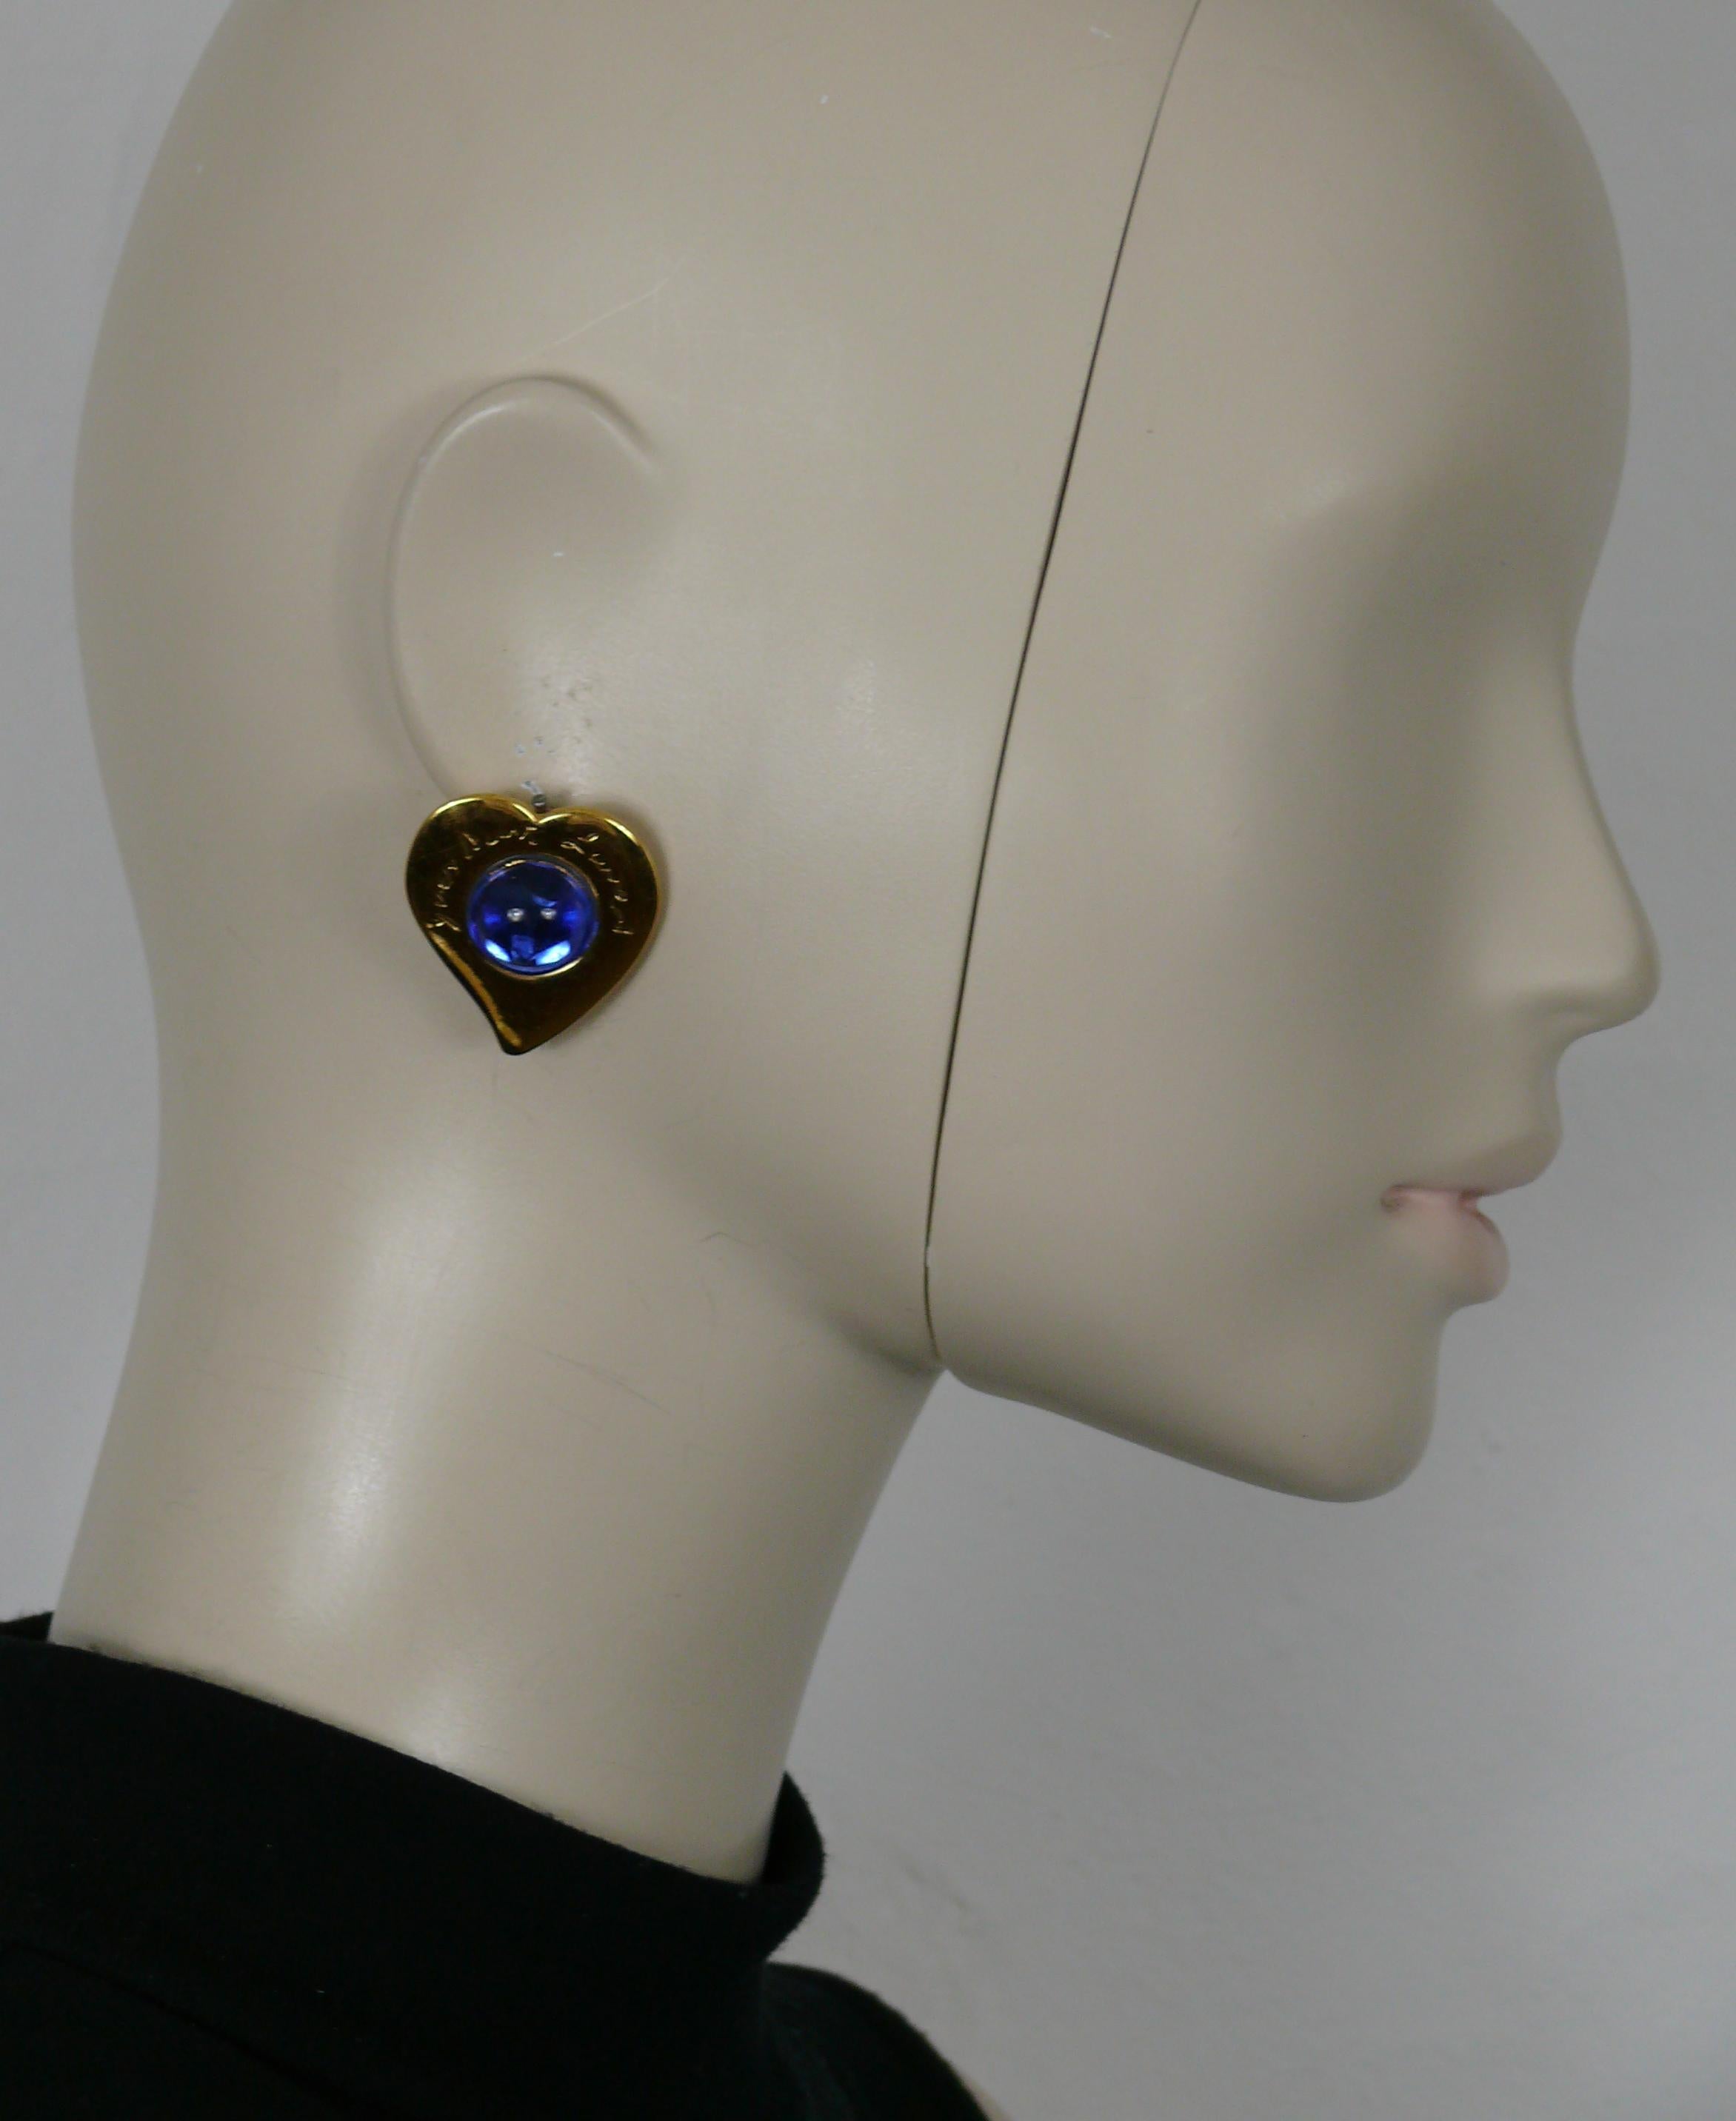 YVES SAINT LAURENT Vintage-Ohrringe mit goldfarbenem Herz, verziert mit einem blauen Glascabochon und einer kursiven YVES SAINT LAURENT Signatur.

Geprägtes YSL Made in France.

Ungefähre Maße: Höhe ca. 3,2 cm (1,26 Zoll) / max. Breite ca. 2,8 cm